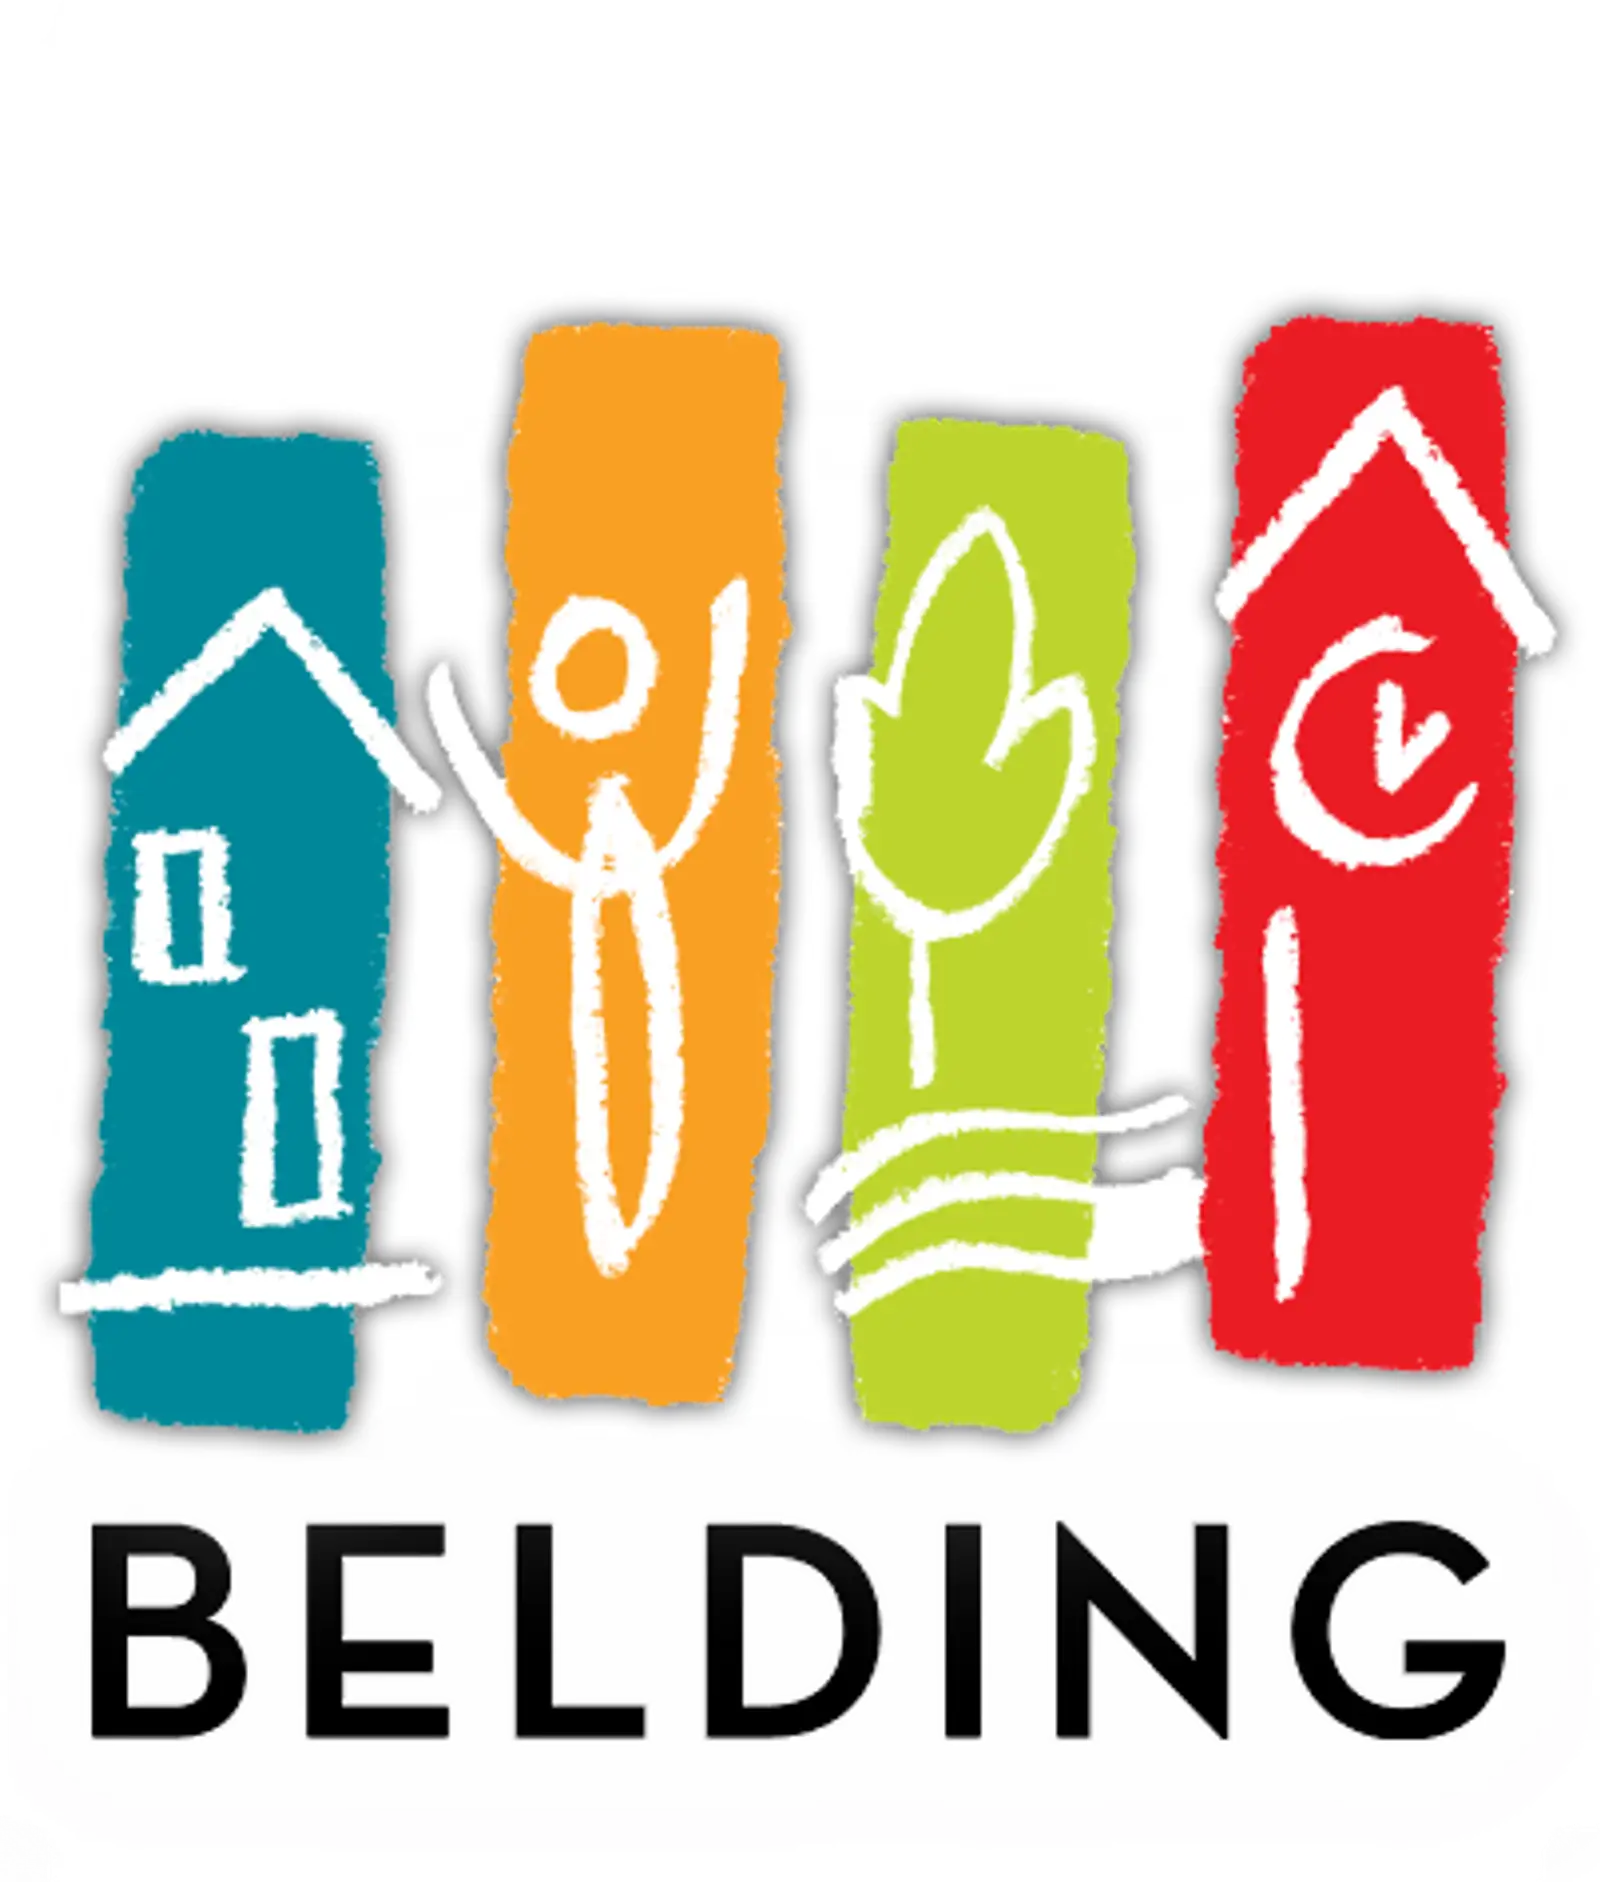 City Of Belding logo